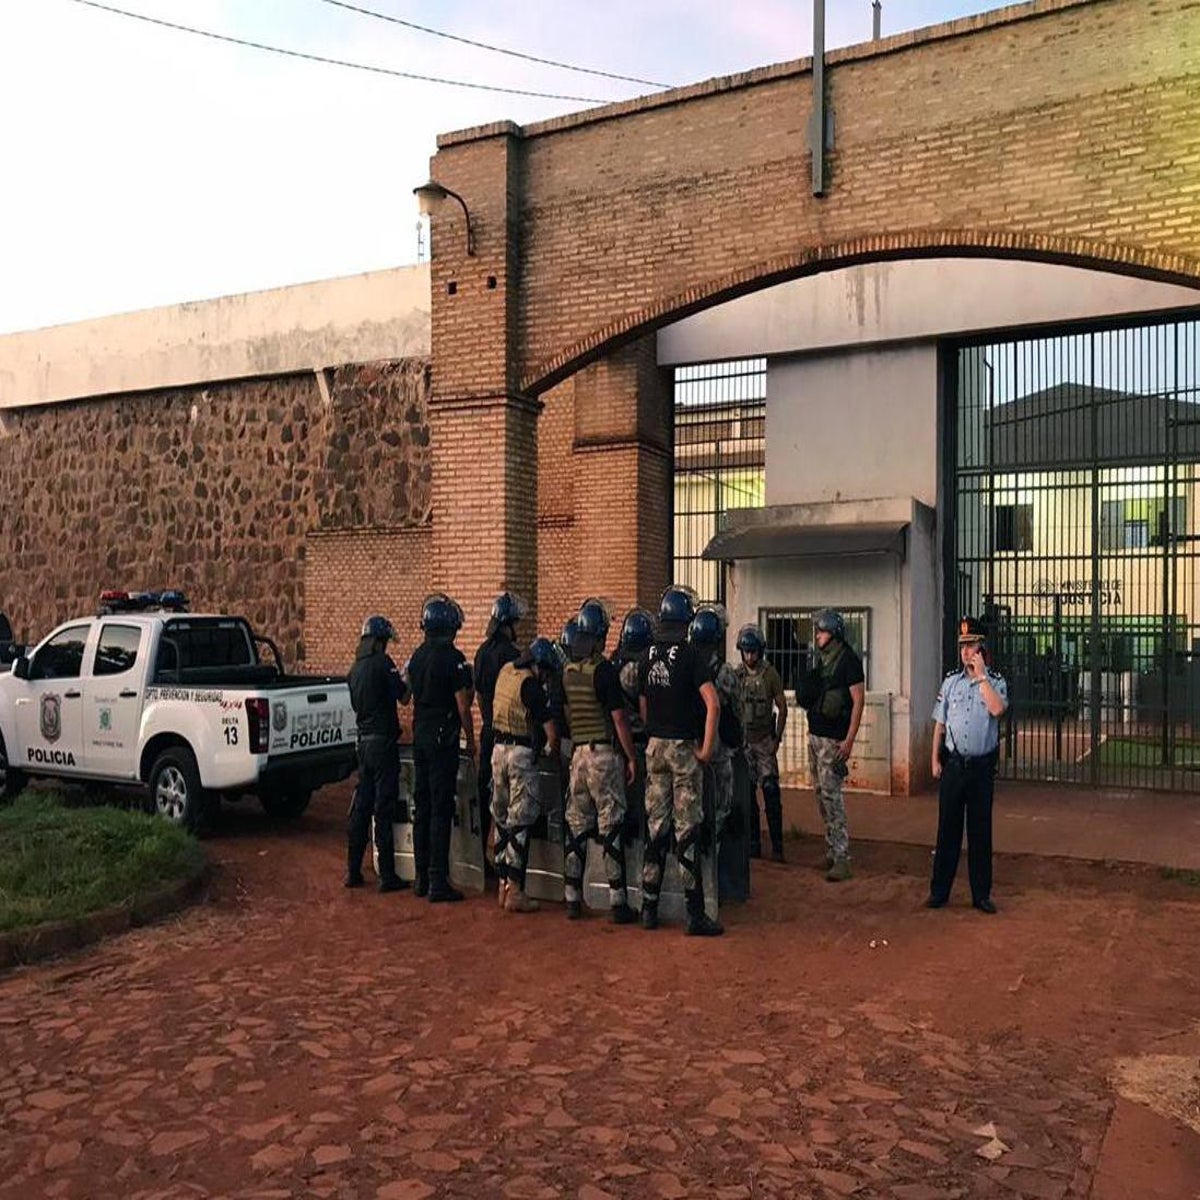 Paraguay investigates mass prison escape in Pedro Juan Caballero